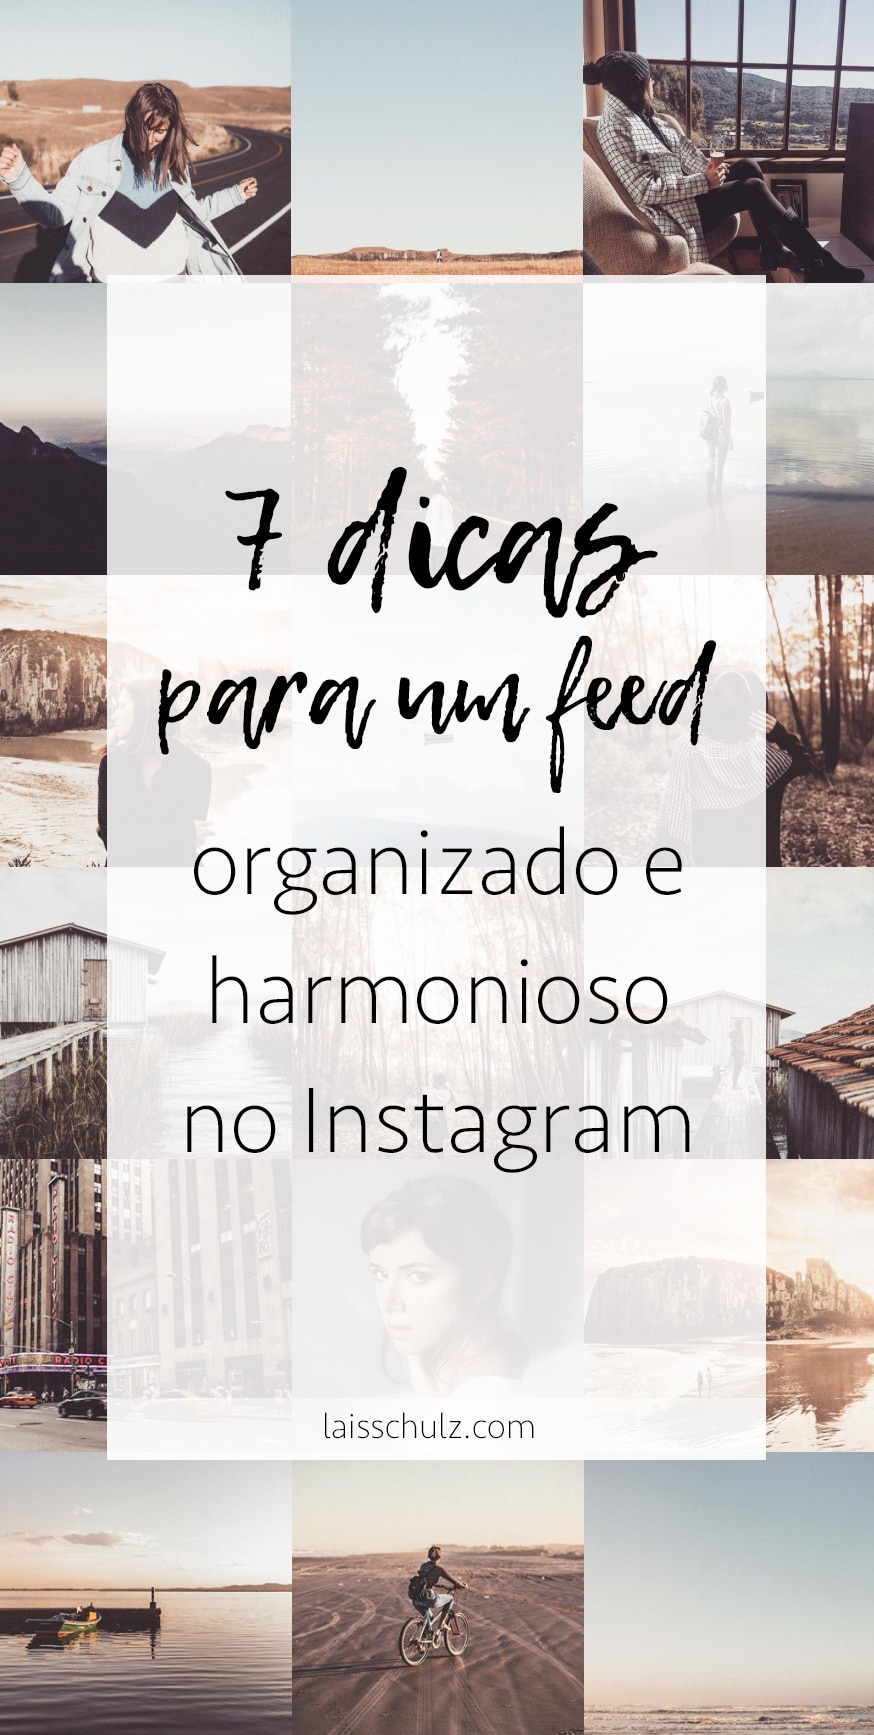 7 dicas para um feed organizado bonito e harmonioso no instagram